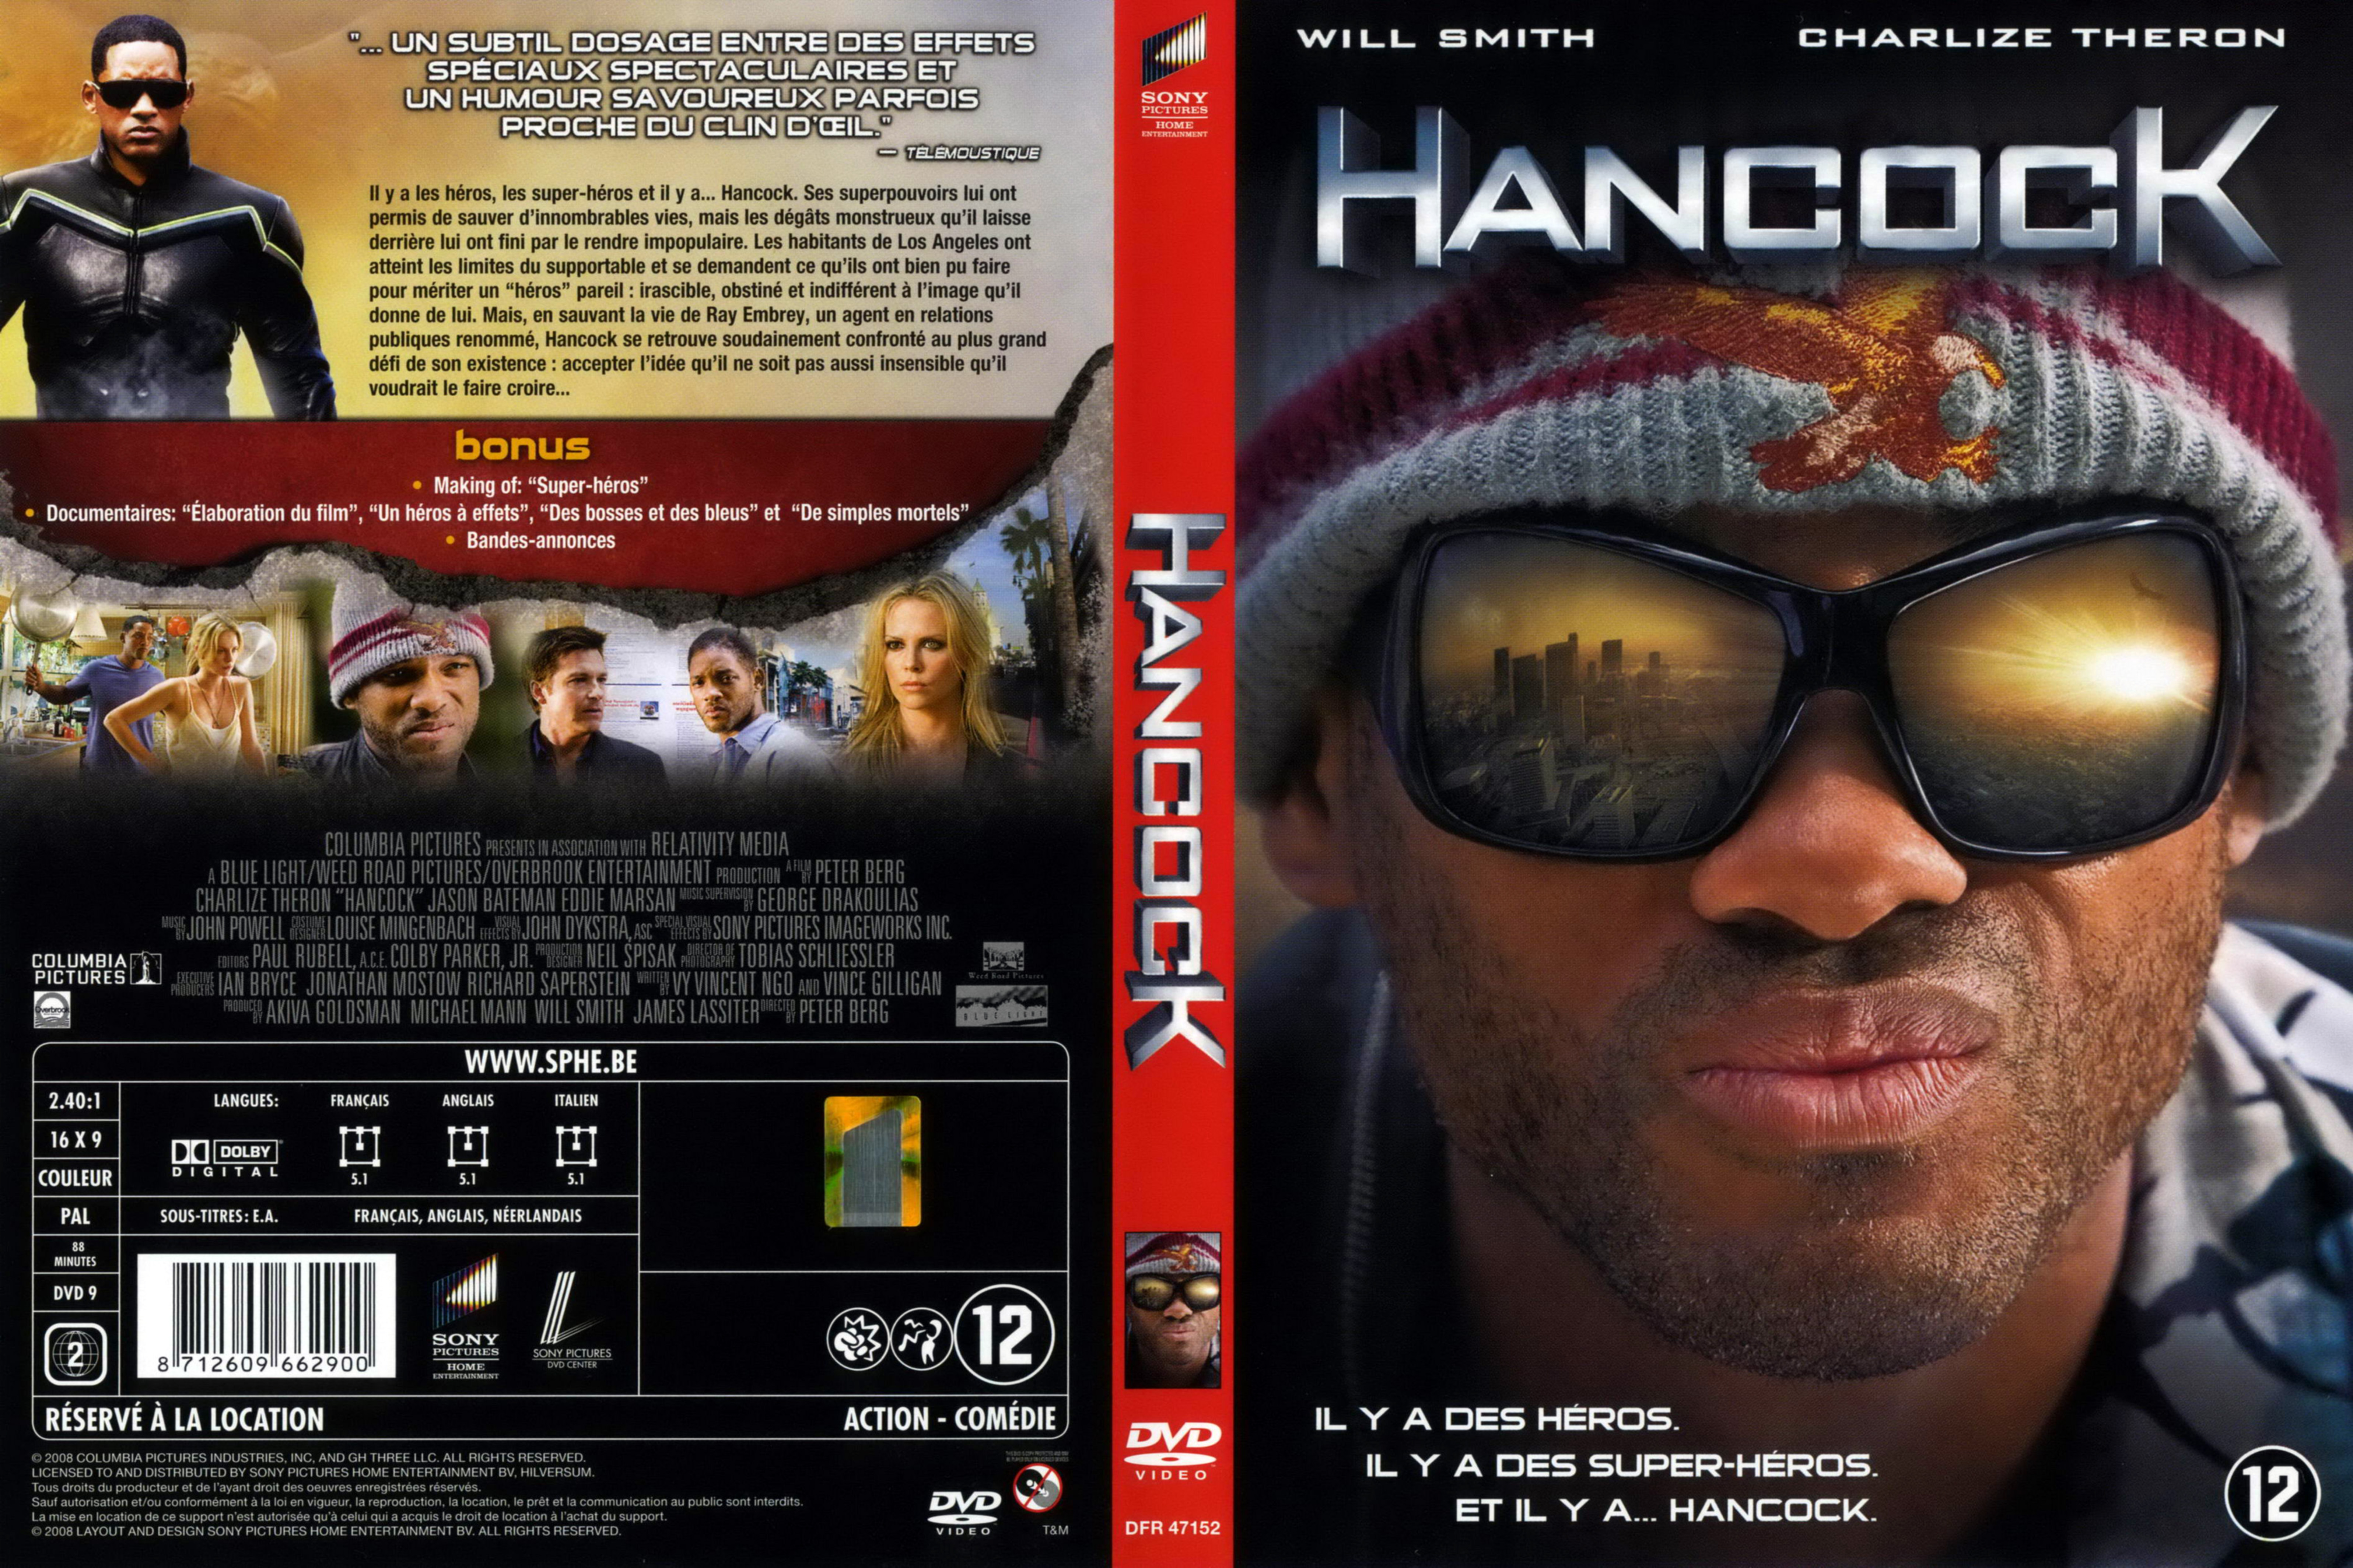 Jaquette DVD Hancock v2